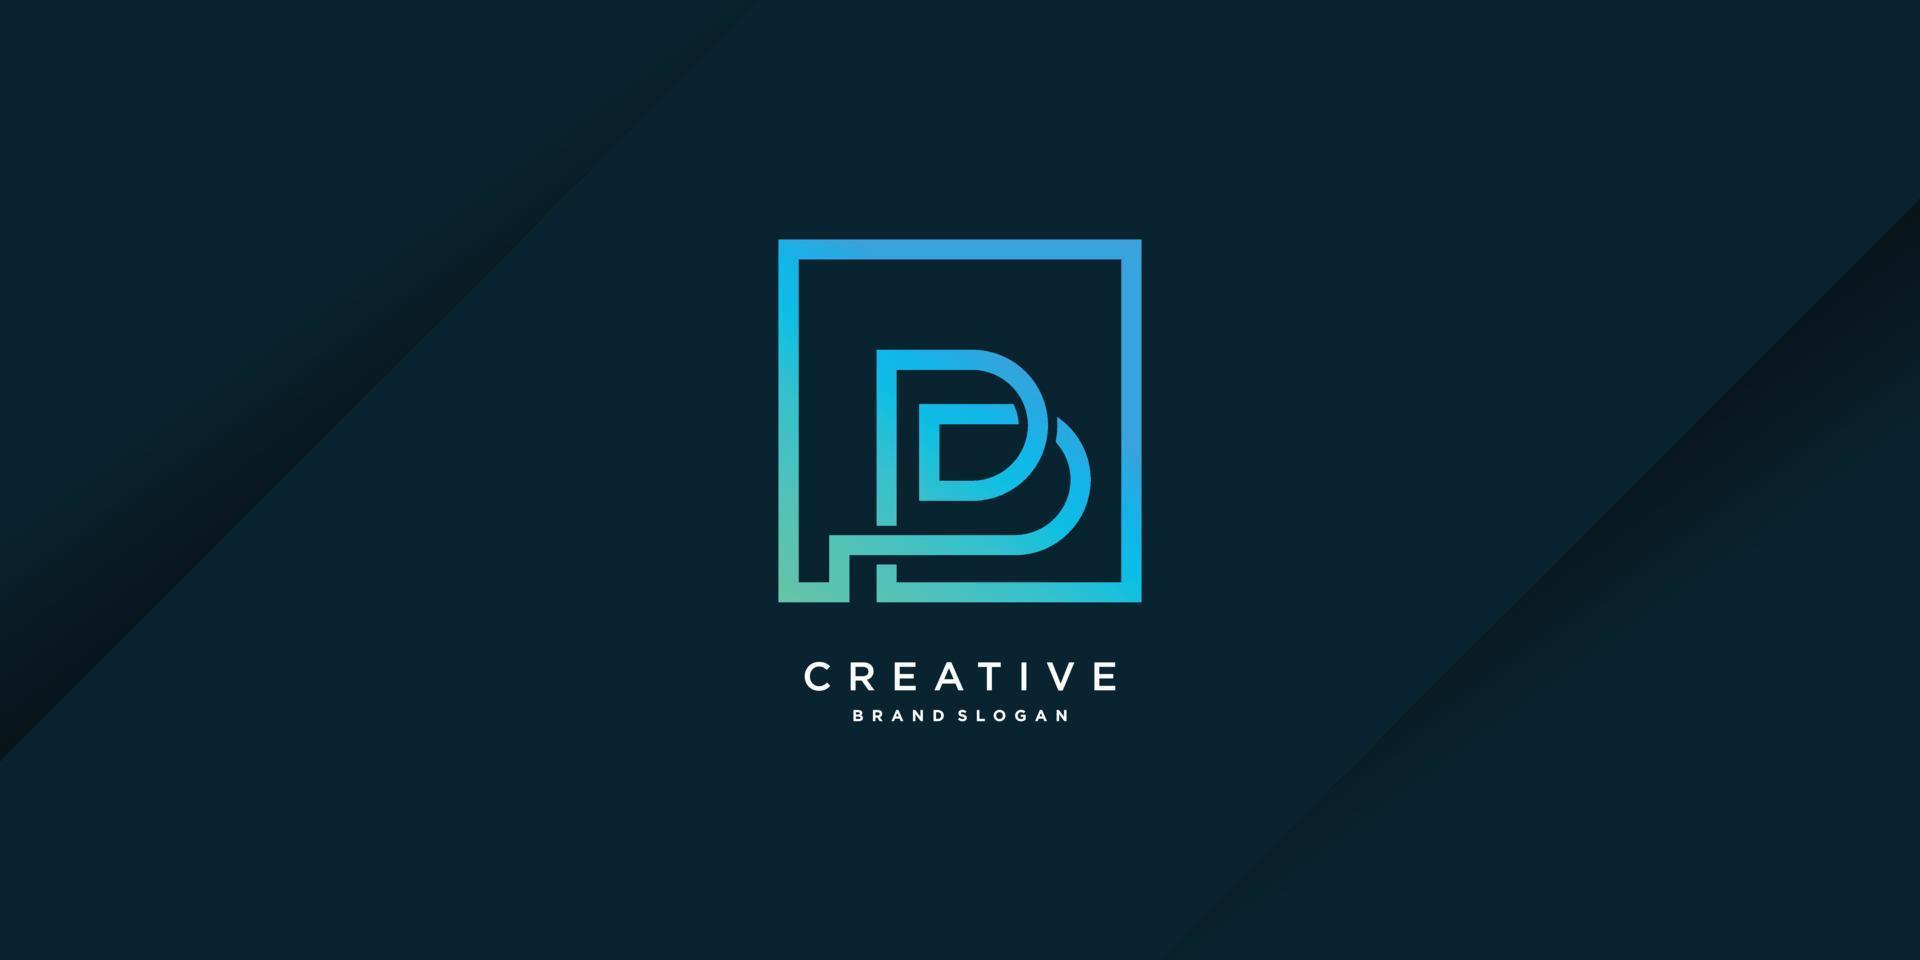 logo b met creatief uniek concept voor bedrijf, persoon, technologie, vectordeel vector